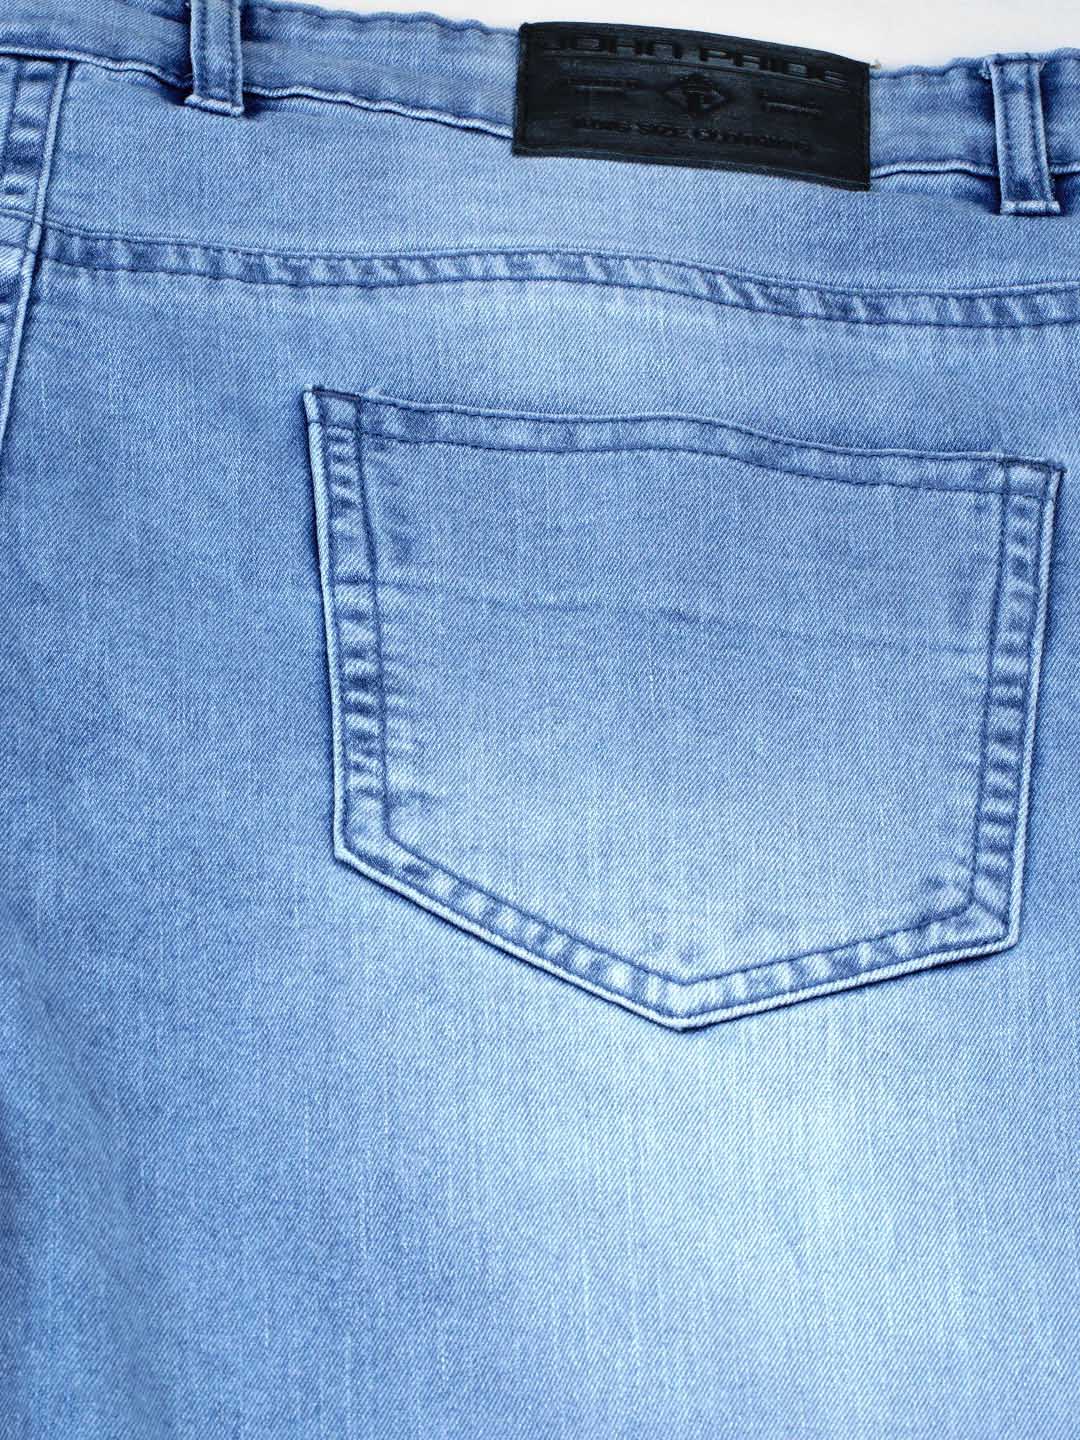 bottomwear/jeans/JPJ12114/jpj12114-5.jpg